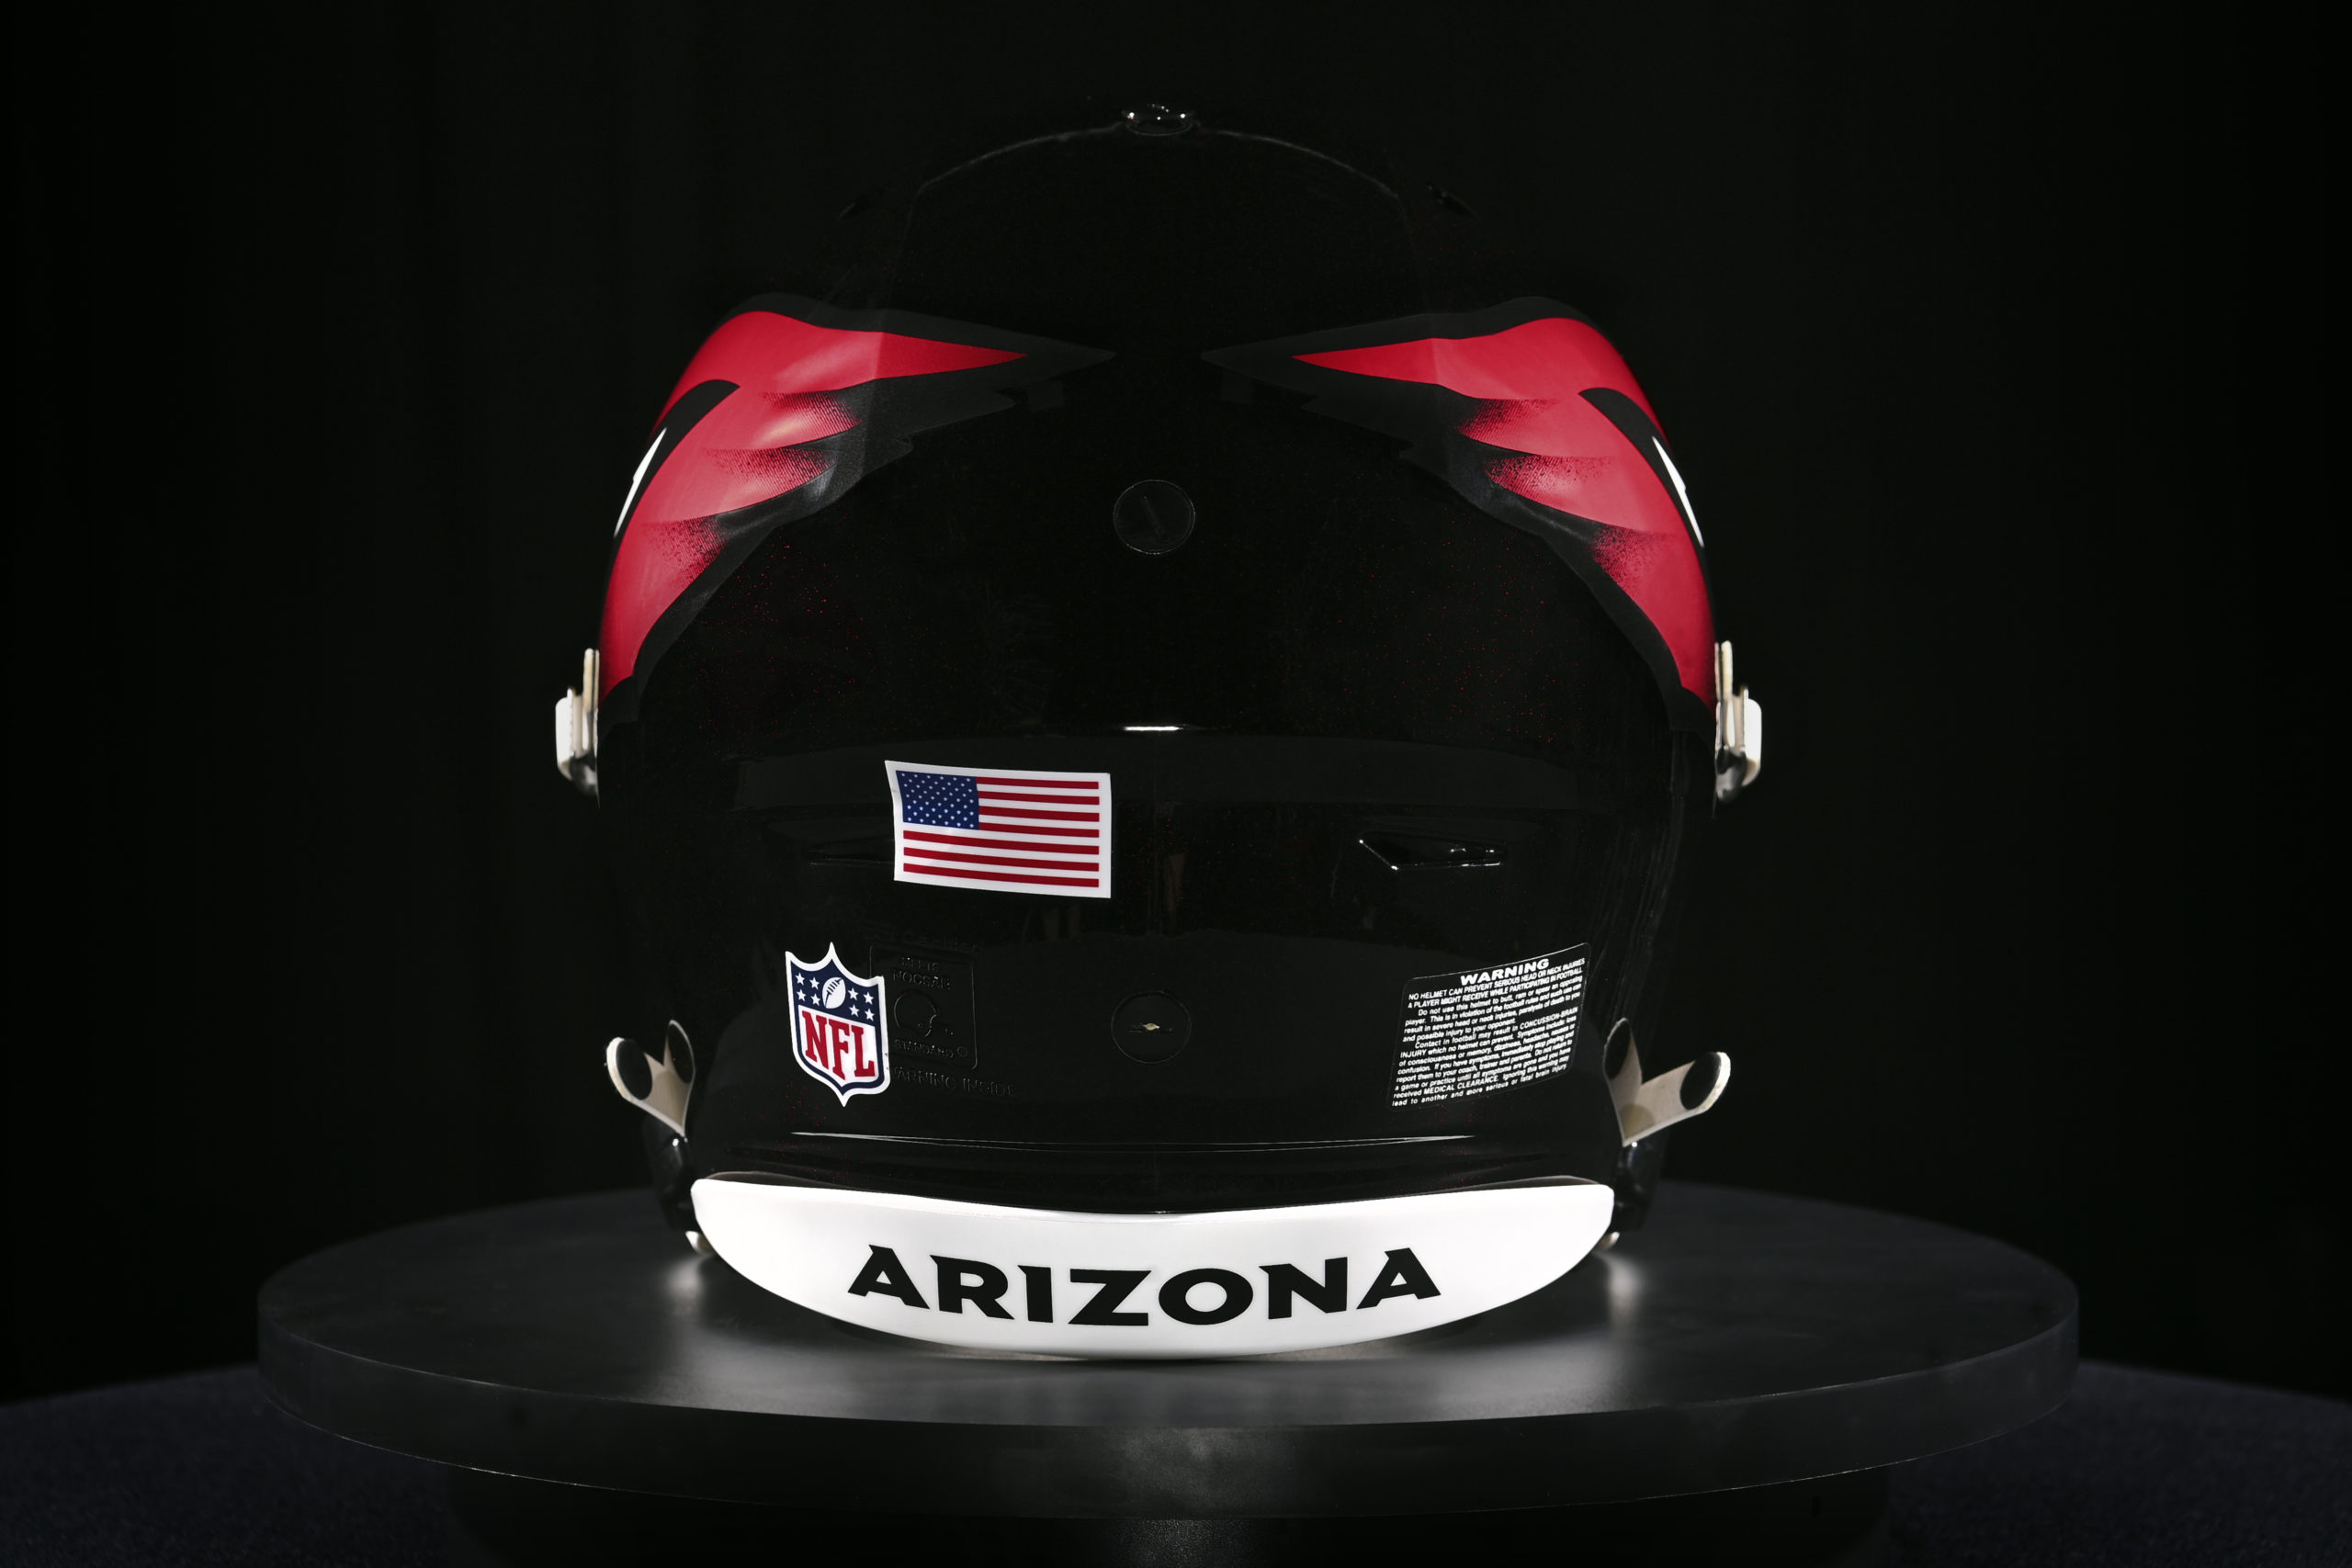 falcons alternate helmet 2022